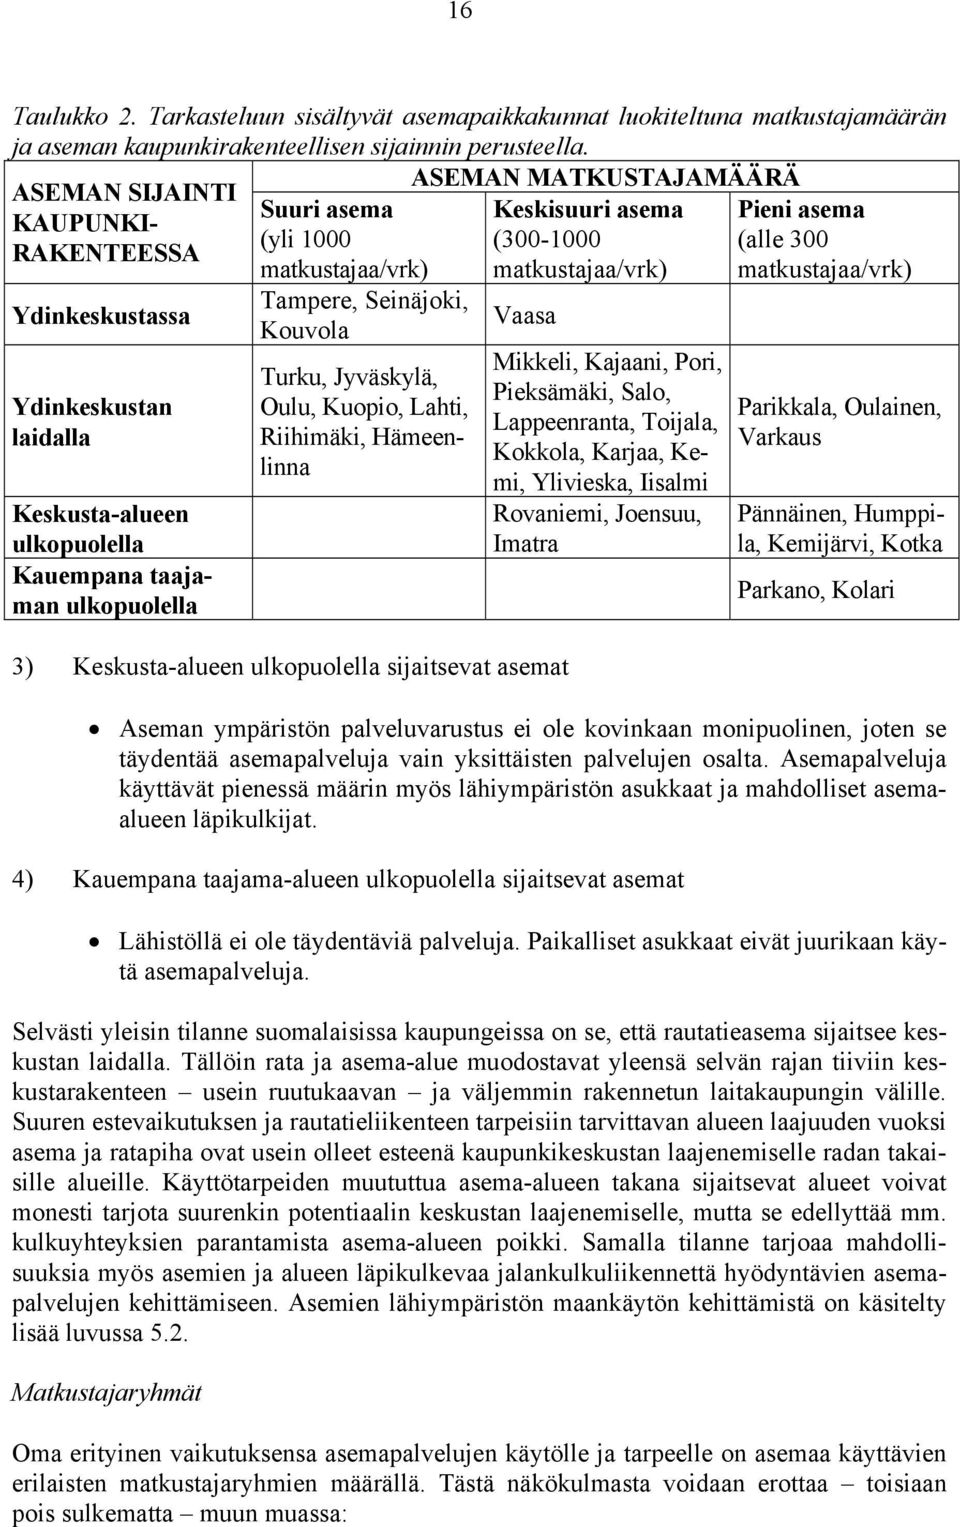 Tampere, Seinäjoki, Kouvola Turku, Jyväskylä, Oulu, Kuopio, Lahti, Riihimäki, Hämeenlinna Keskisuuri asema (300-1000 matkustajaa/vrk) Vaasa 3) Keskusta-alueen ulkopuolella sijaitsevat asemat Mikkeli,